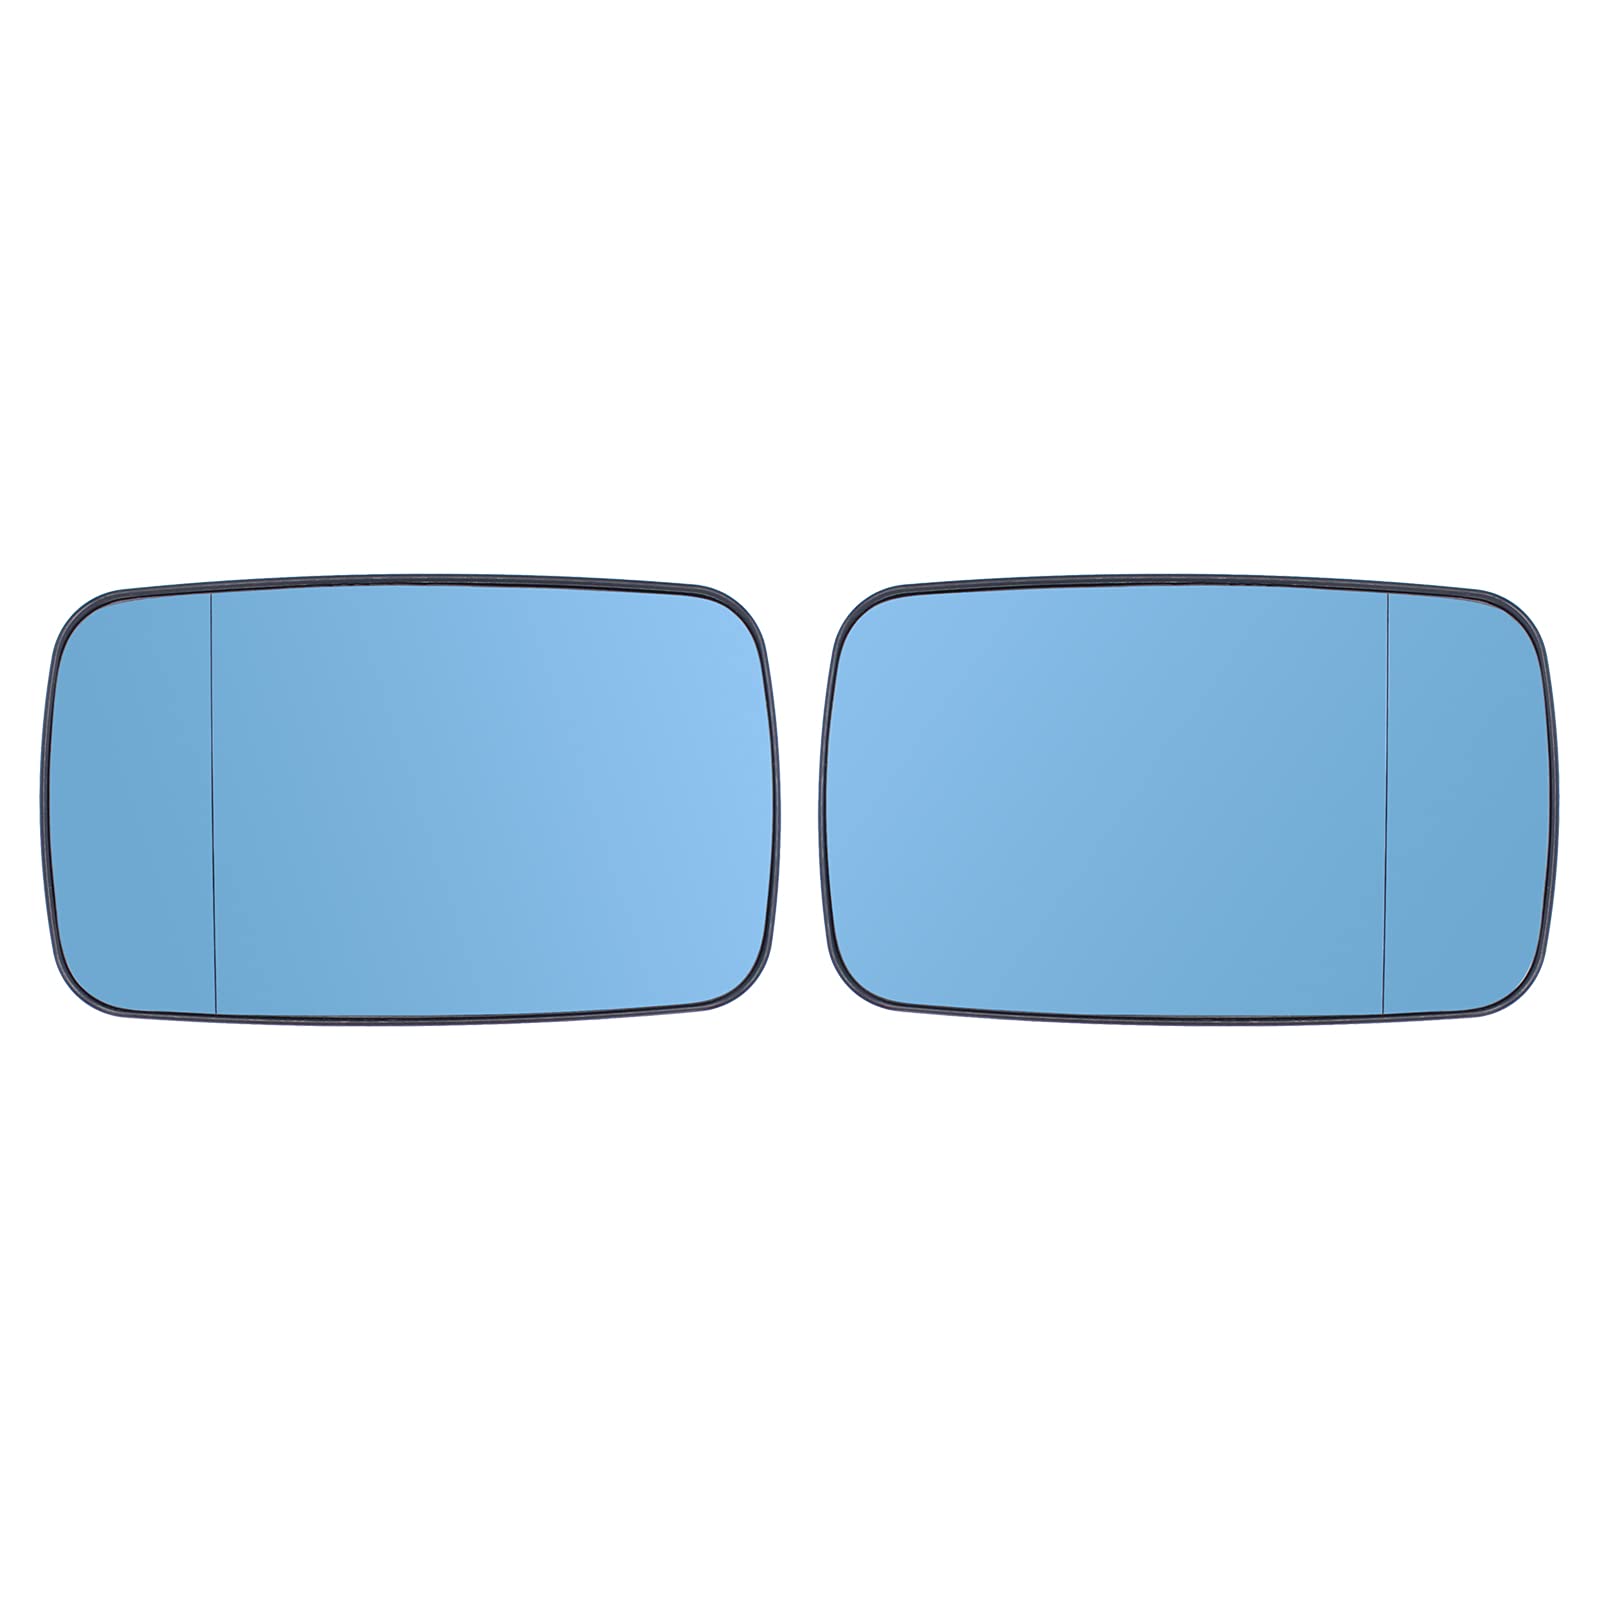 Doo Engy Spiegelglas Set für 3er E46 E39 Coupe Cabrio Links und Rechts Spiegelgläser Satz Beheizbar Blau Glas von Doo Engy